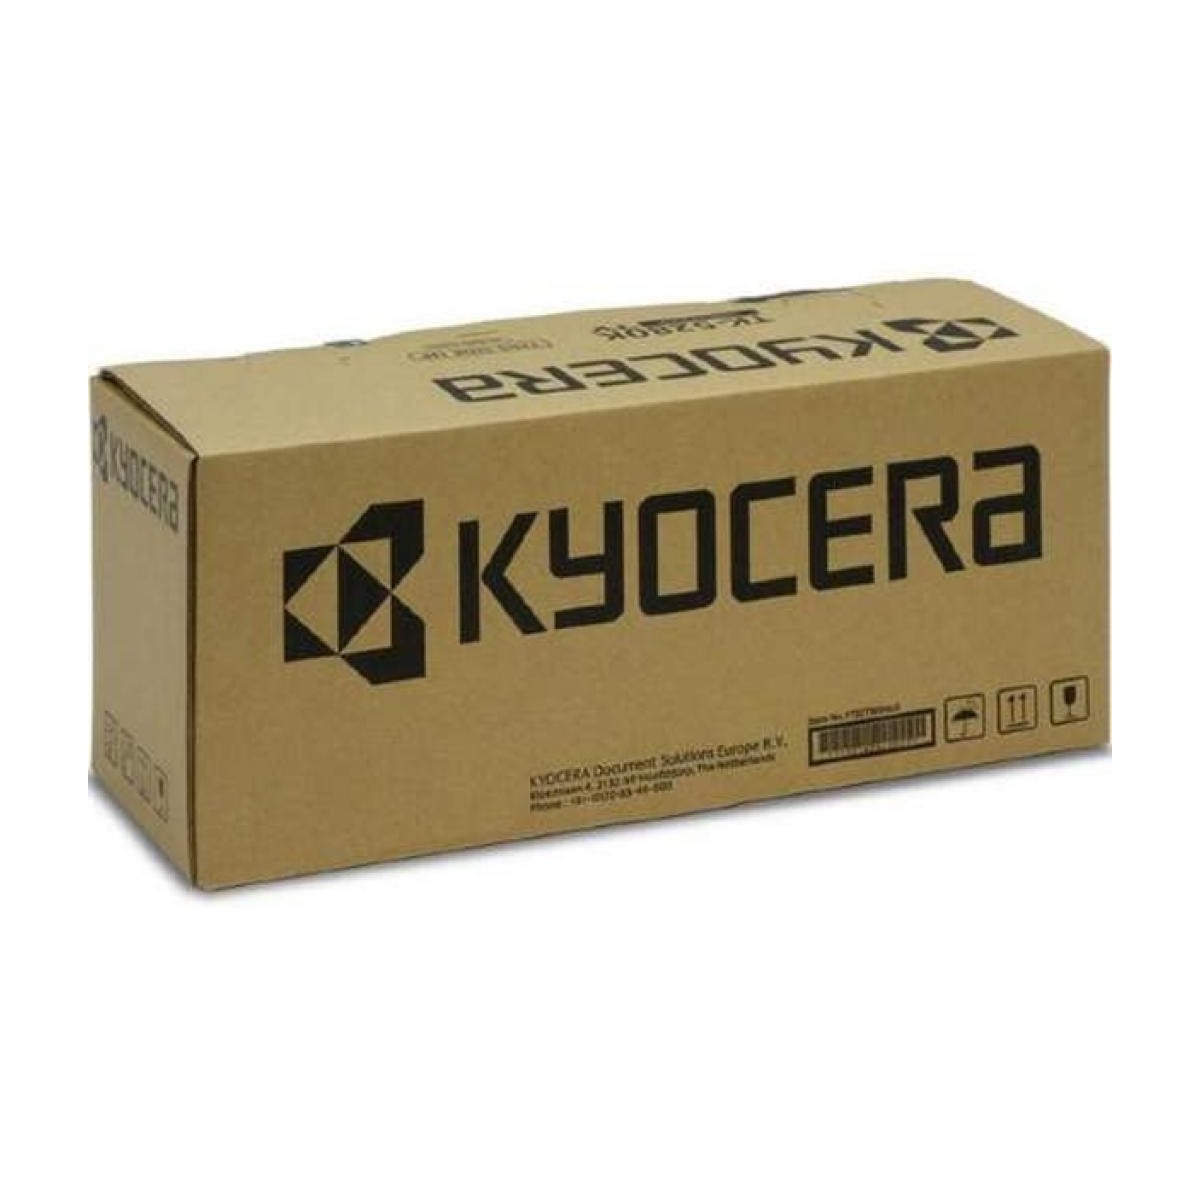 Kyocera Drum DK-715 302GN93013